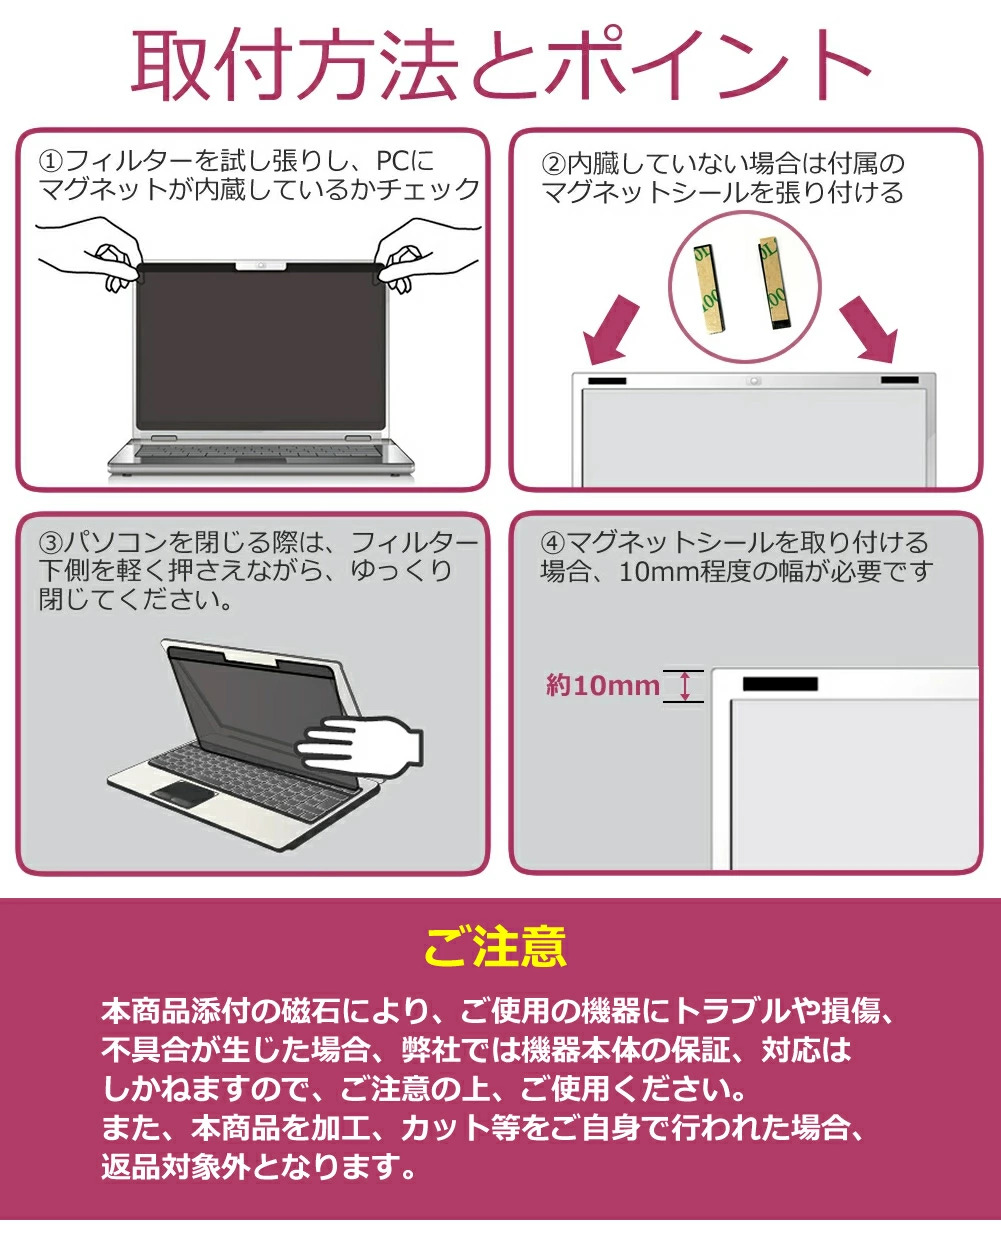 TSUKUMO G-GEAR note N1589Jシリーズ 15.6インチ のぞき見防止 フィルター パソコン マグネットプライバシー フィルター リバーシブルタイプ メール便送料無料